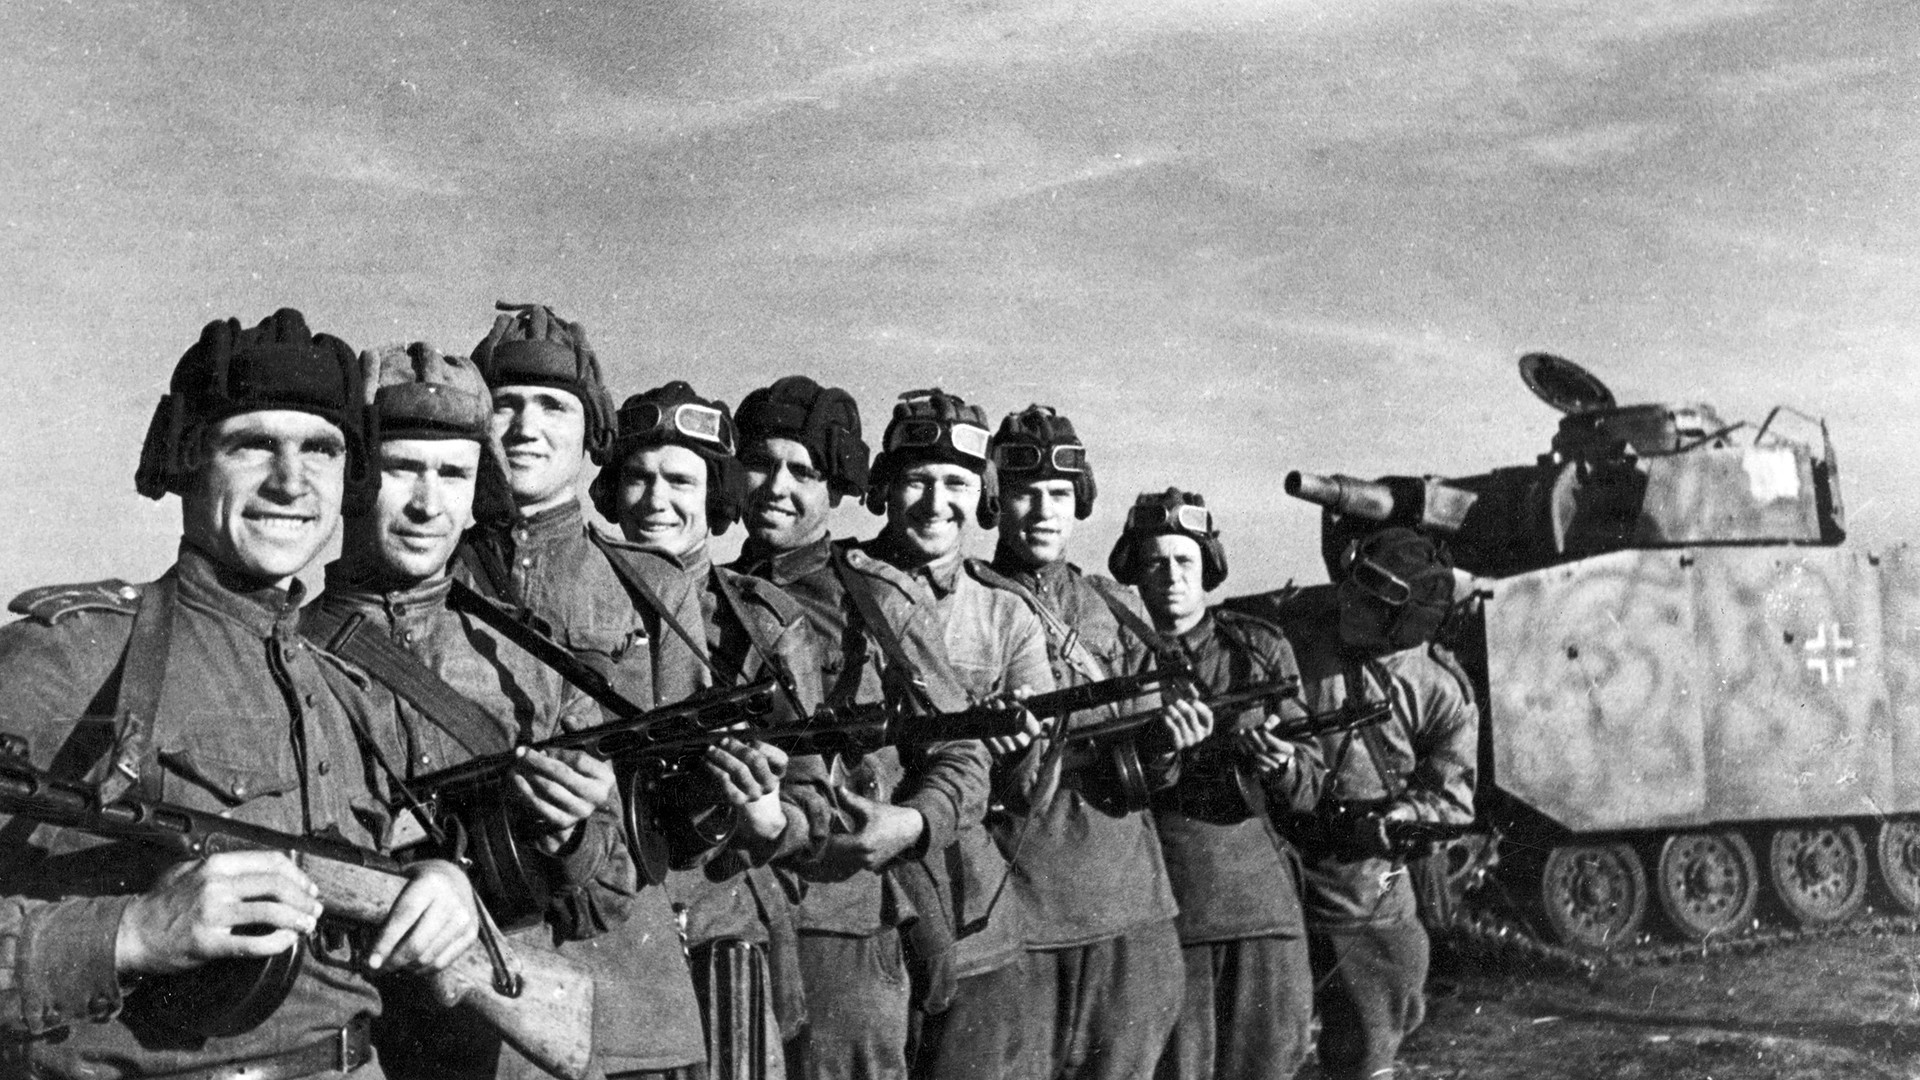 クルスク大戦車戦 ヒトラーが第二次世界大戦に勝つ最後の希望をいかに失ったか 写真特集 ロシア ビヨンド